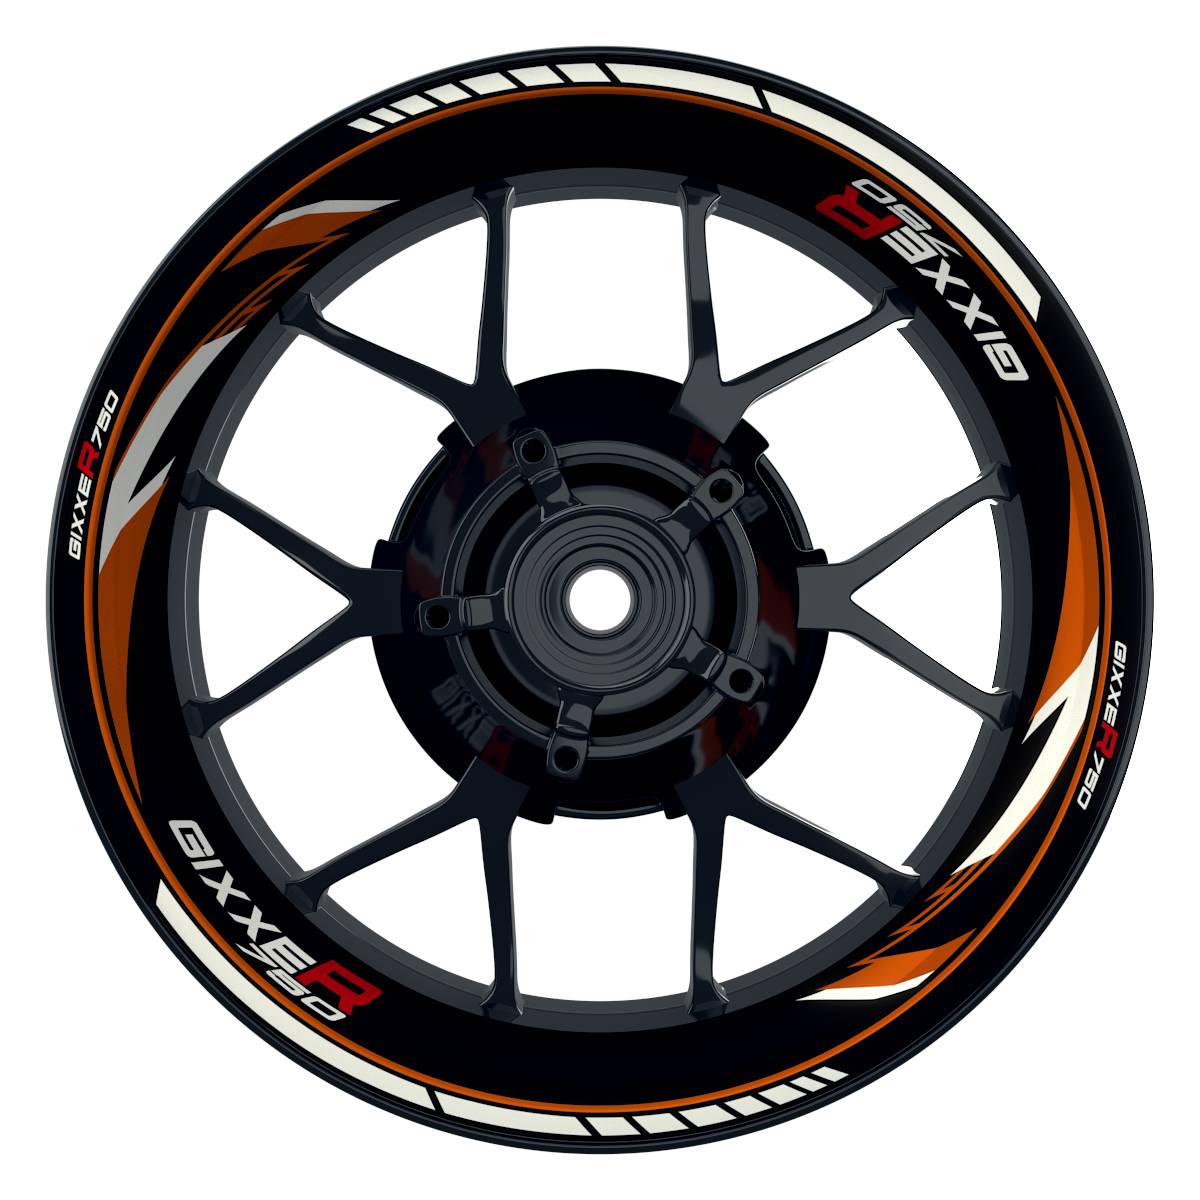 GIXXER750 Razor schwarz orange Wheelsticker Felgenaufkleber